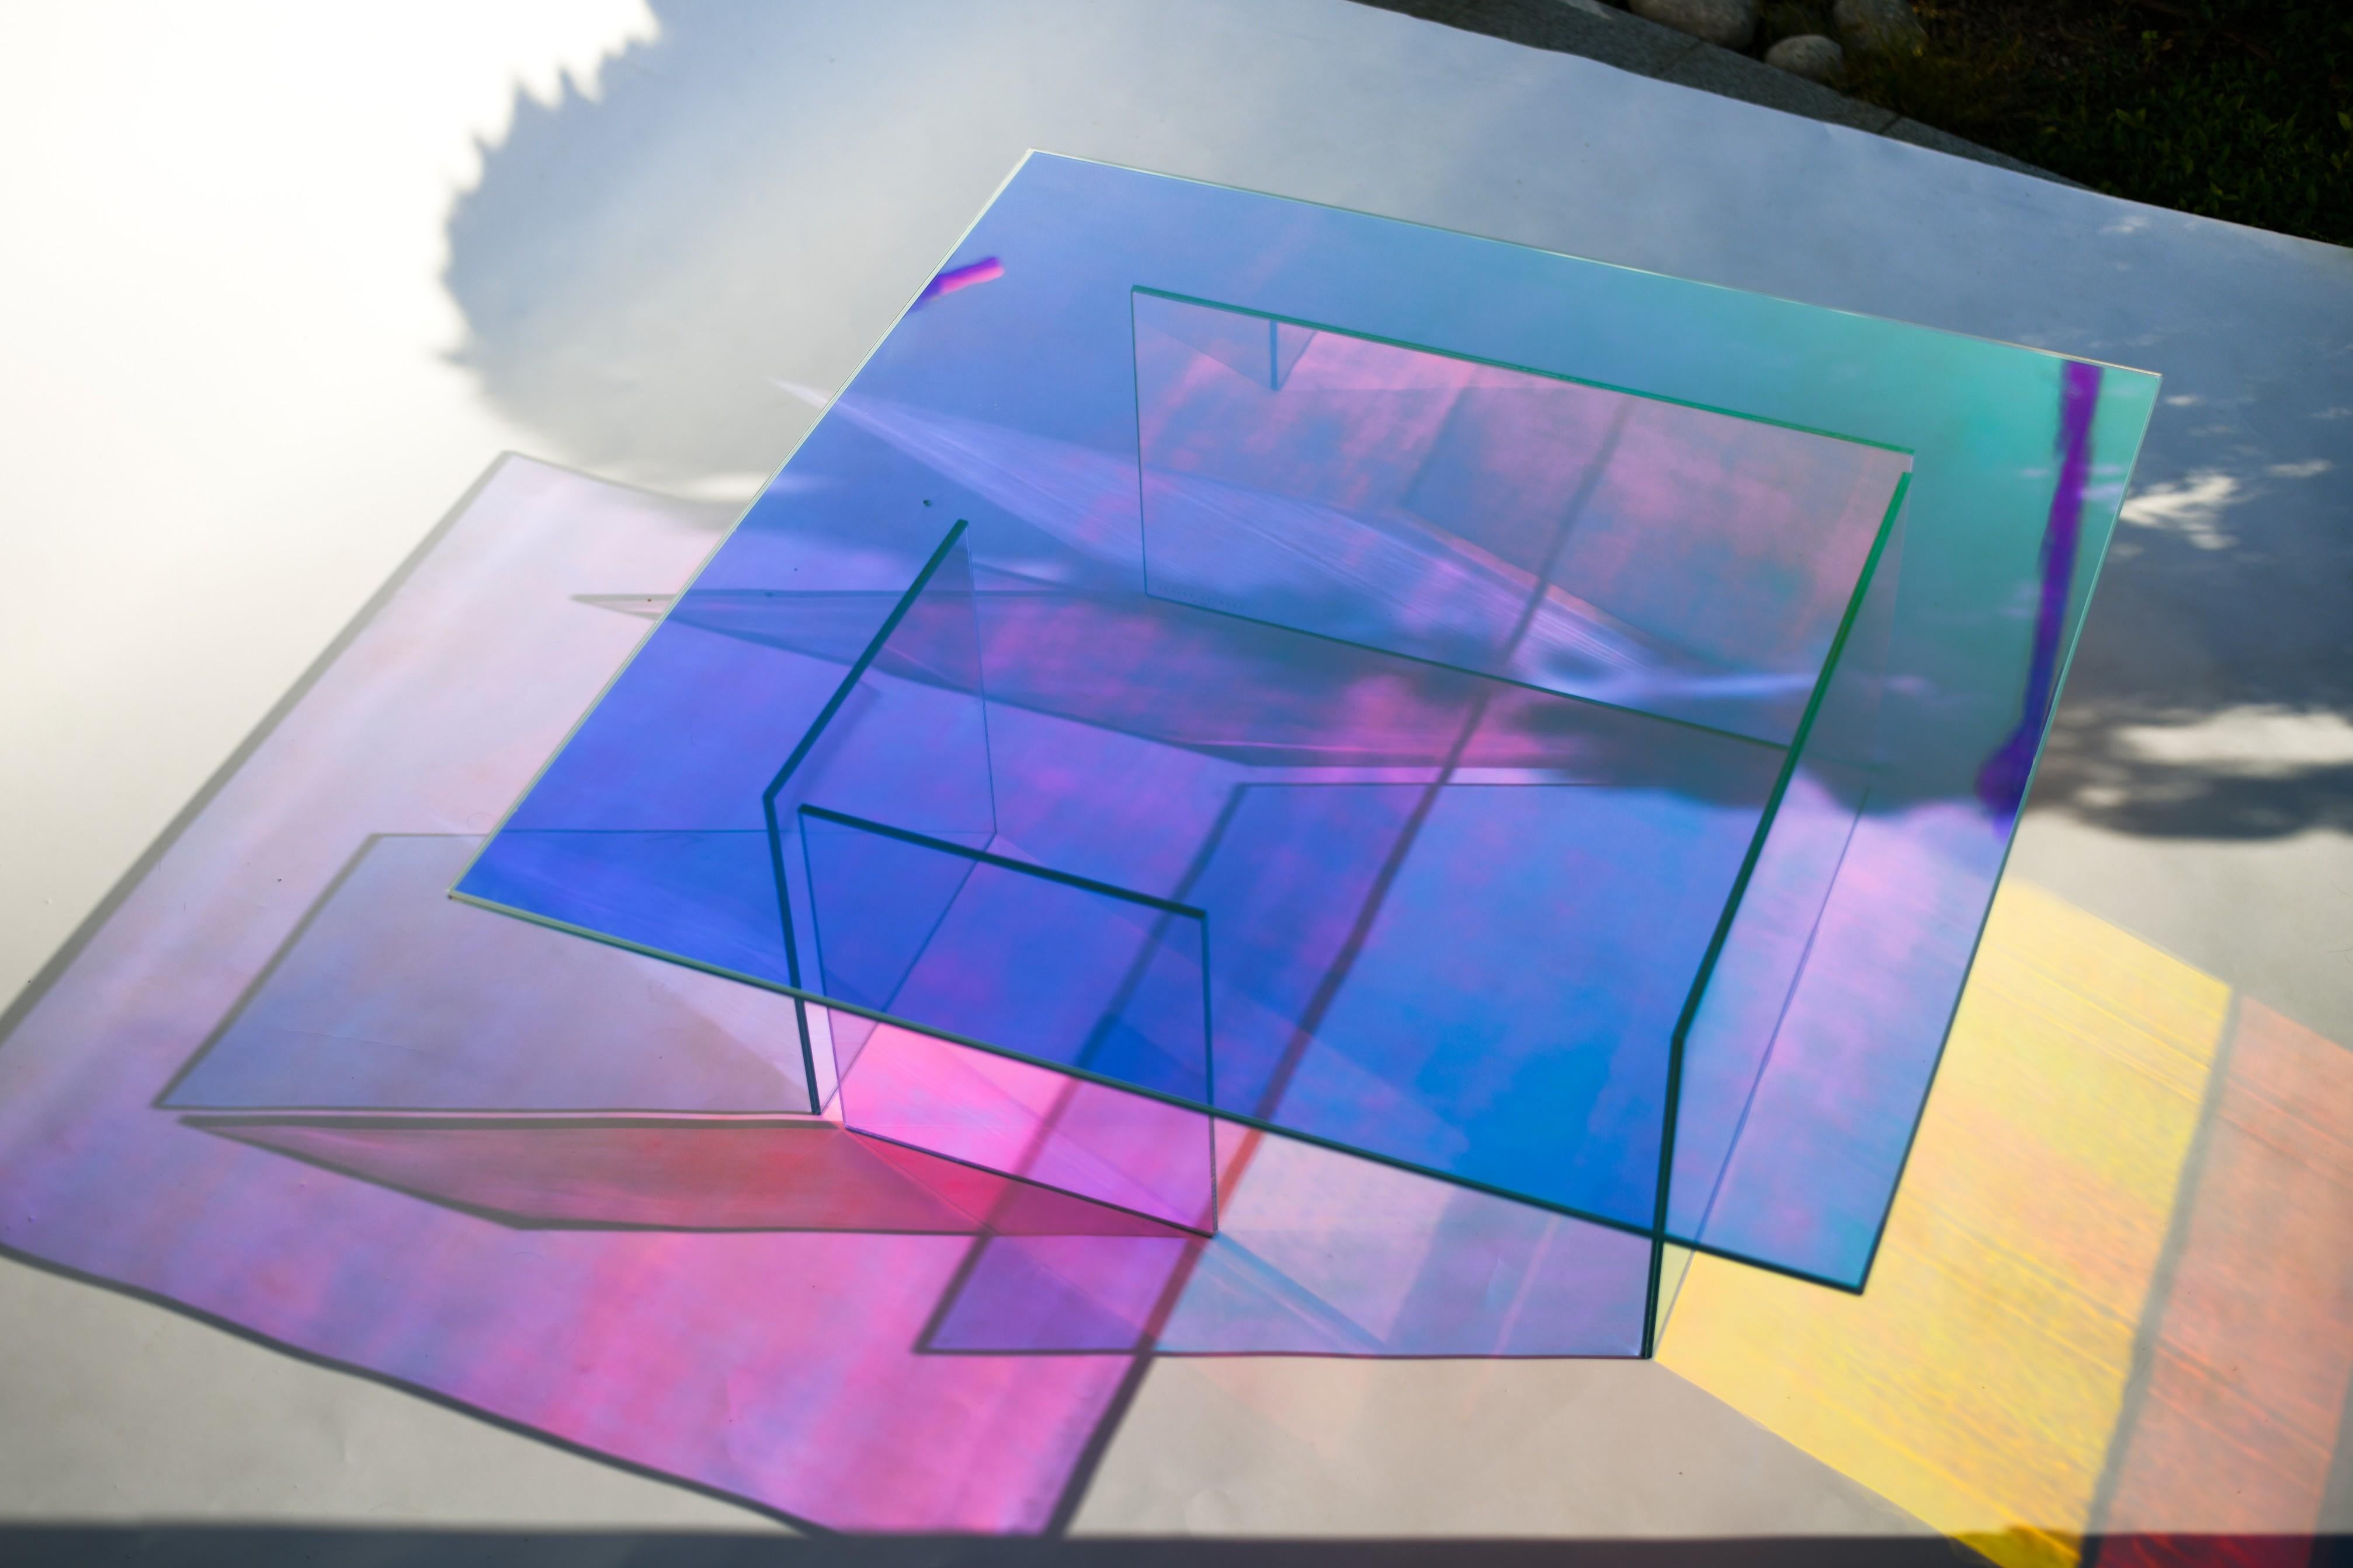 Table en verre Kinetic colors de Brajak Vitberg
Matériaux : Verre, film dichroïque
Dimensions : 120 x 120 x 40 cm

Bijelic et Brajak sont deux architectes de Ljubljana, en Slovénie.
Ils s'efforcent de concevoir des éléments artisanaux et de les